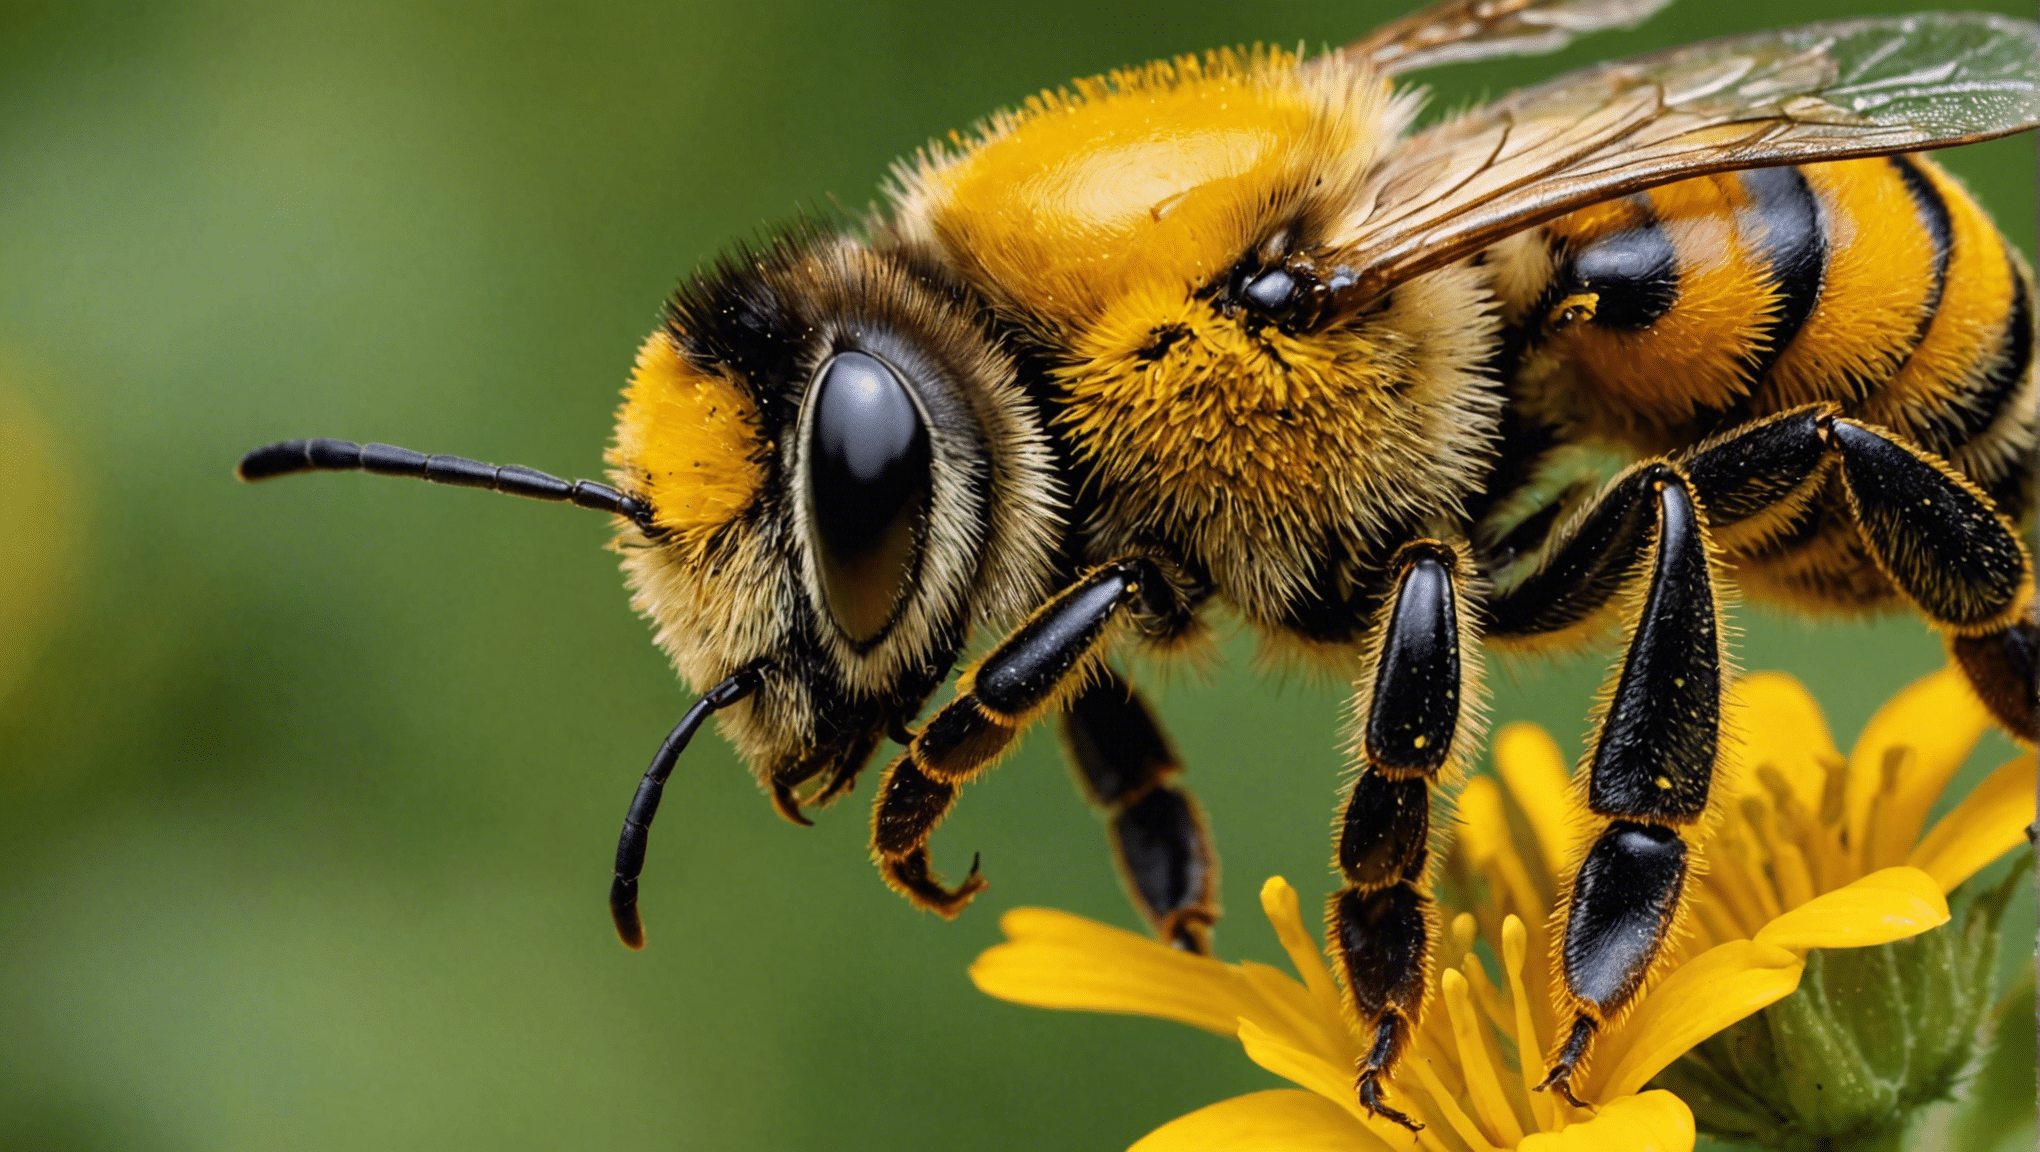 dowiedz się, dlaczego pszczoła odgrywa kluczową rolę jako strażnik różnorodności roślin i jakie znaczenie ma dla naszego ekosystemu.